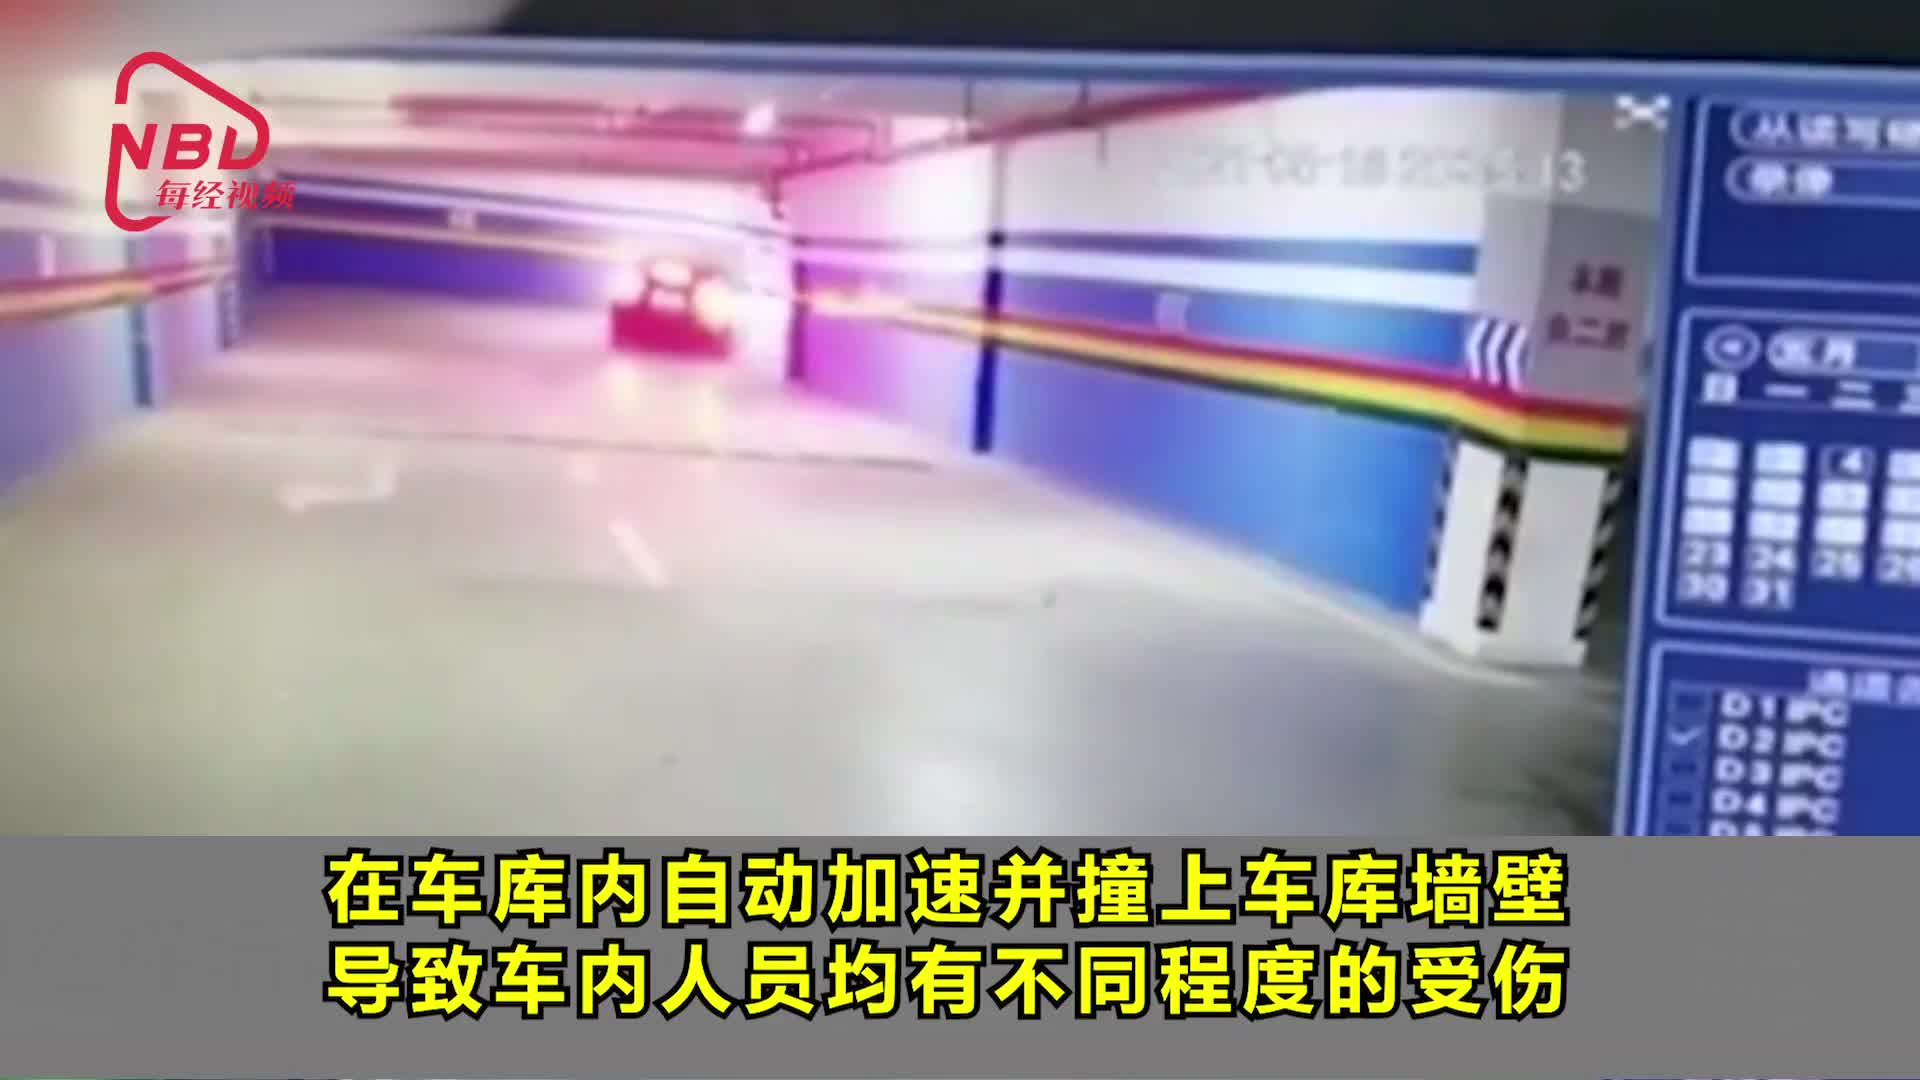 重庆特斯车库停车自动加速撞墙车主儿子撞掉多颗牙齿 新浪财经 新浪网